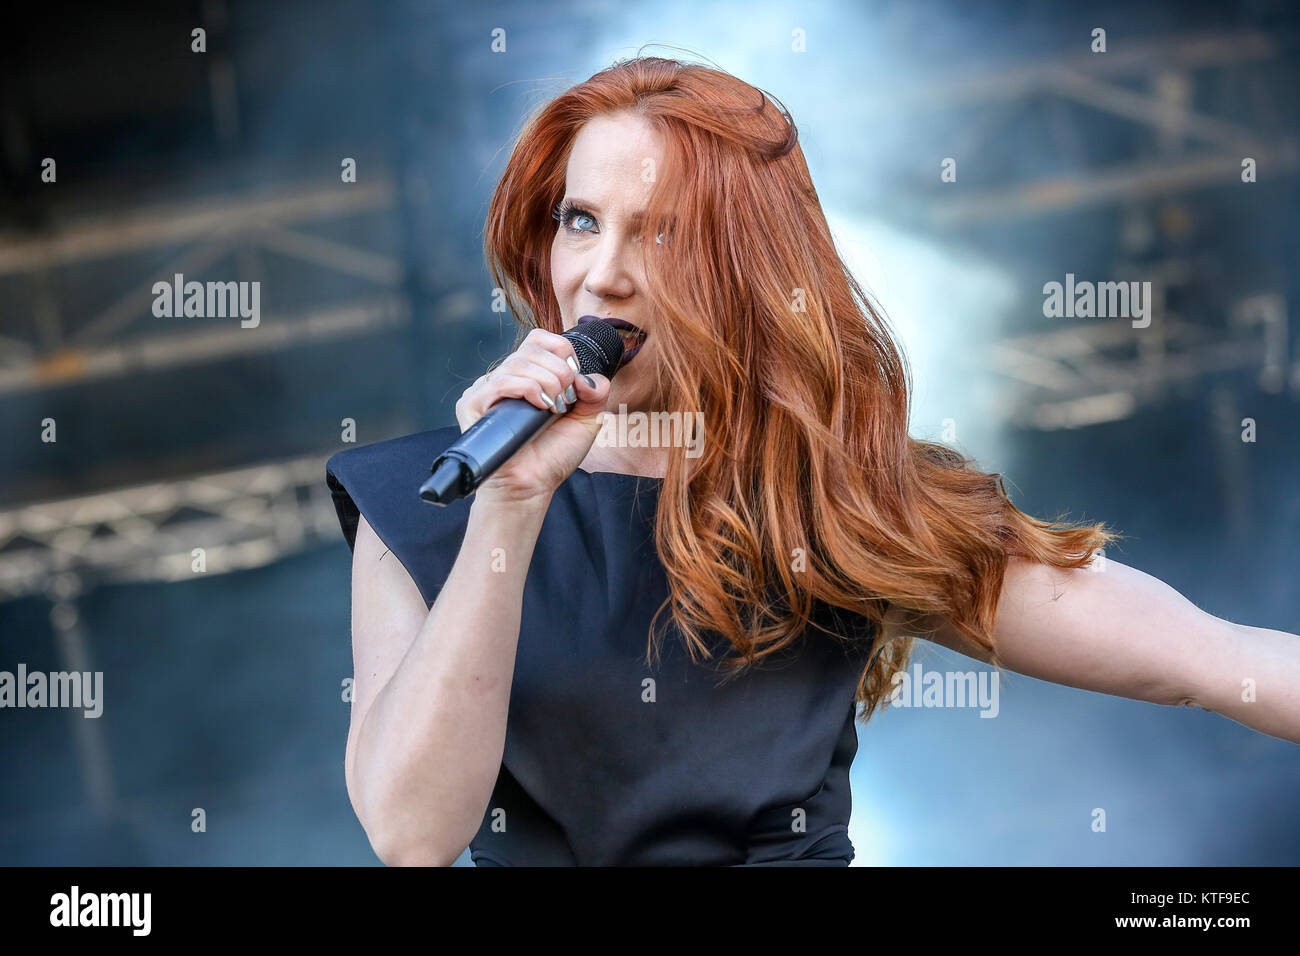 L'Olandese symphonic metal band Epica esegue un concerto dal vivo al Sweden Rock Festival 2016. Qui la cantante Simone Simons è visto dal vivo sul palco. La Svezia, 10/06 2016. Foto Stock